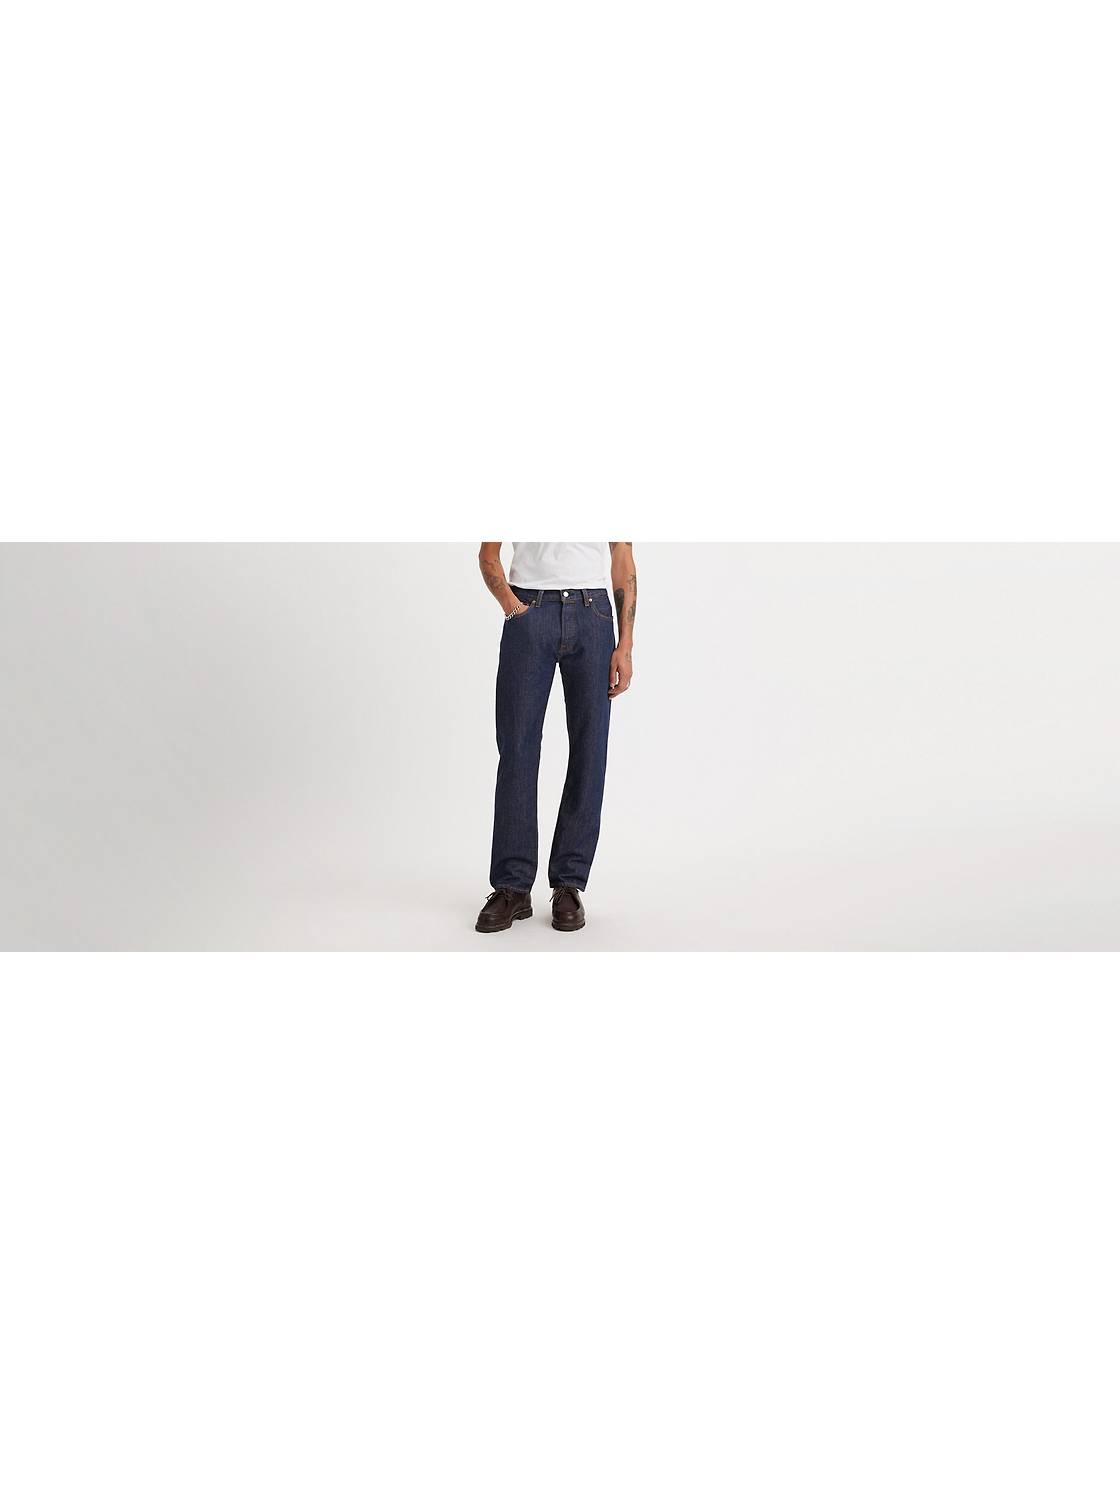 Men's Jeans - Shop Fit Jeans | Levi's® US